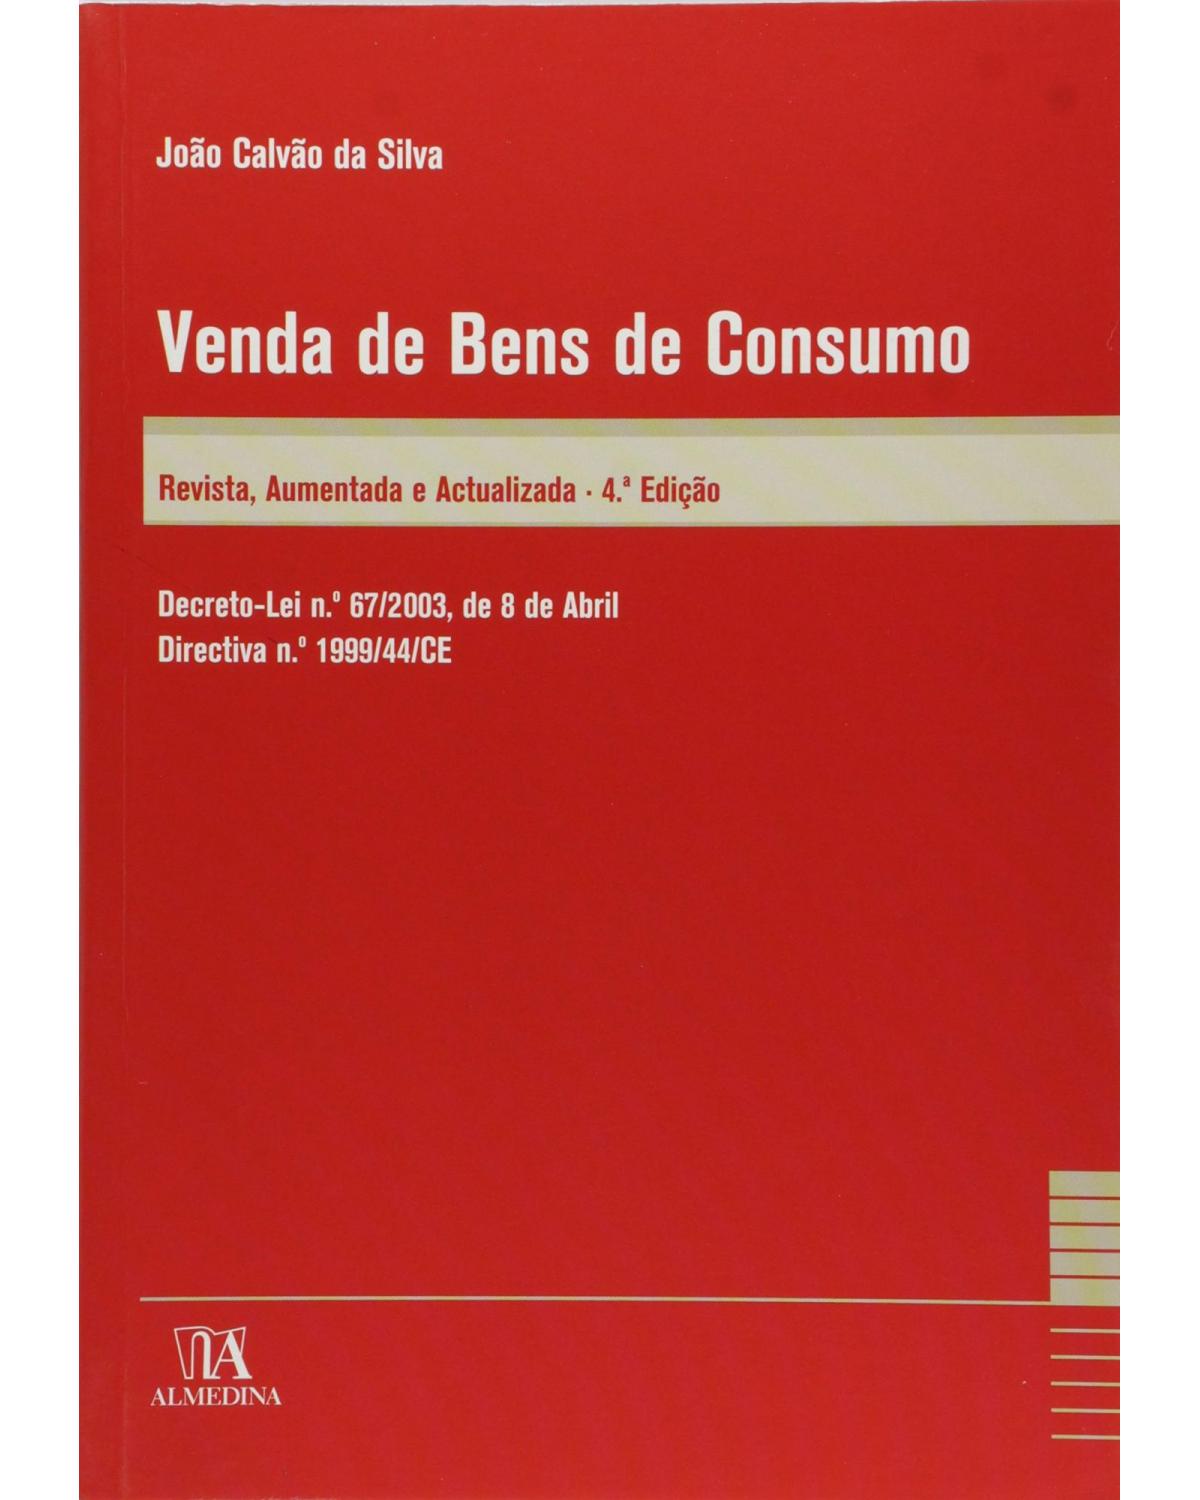 Venda de bens de consumo - decreto-lei n.º 67/2003, de 8 de abril - Directiva n.º 1999/44/CE - 4ª Edição | 2010